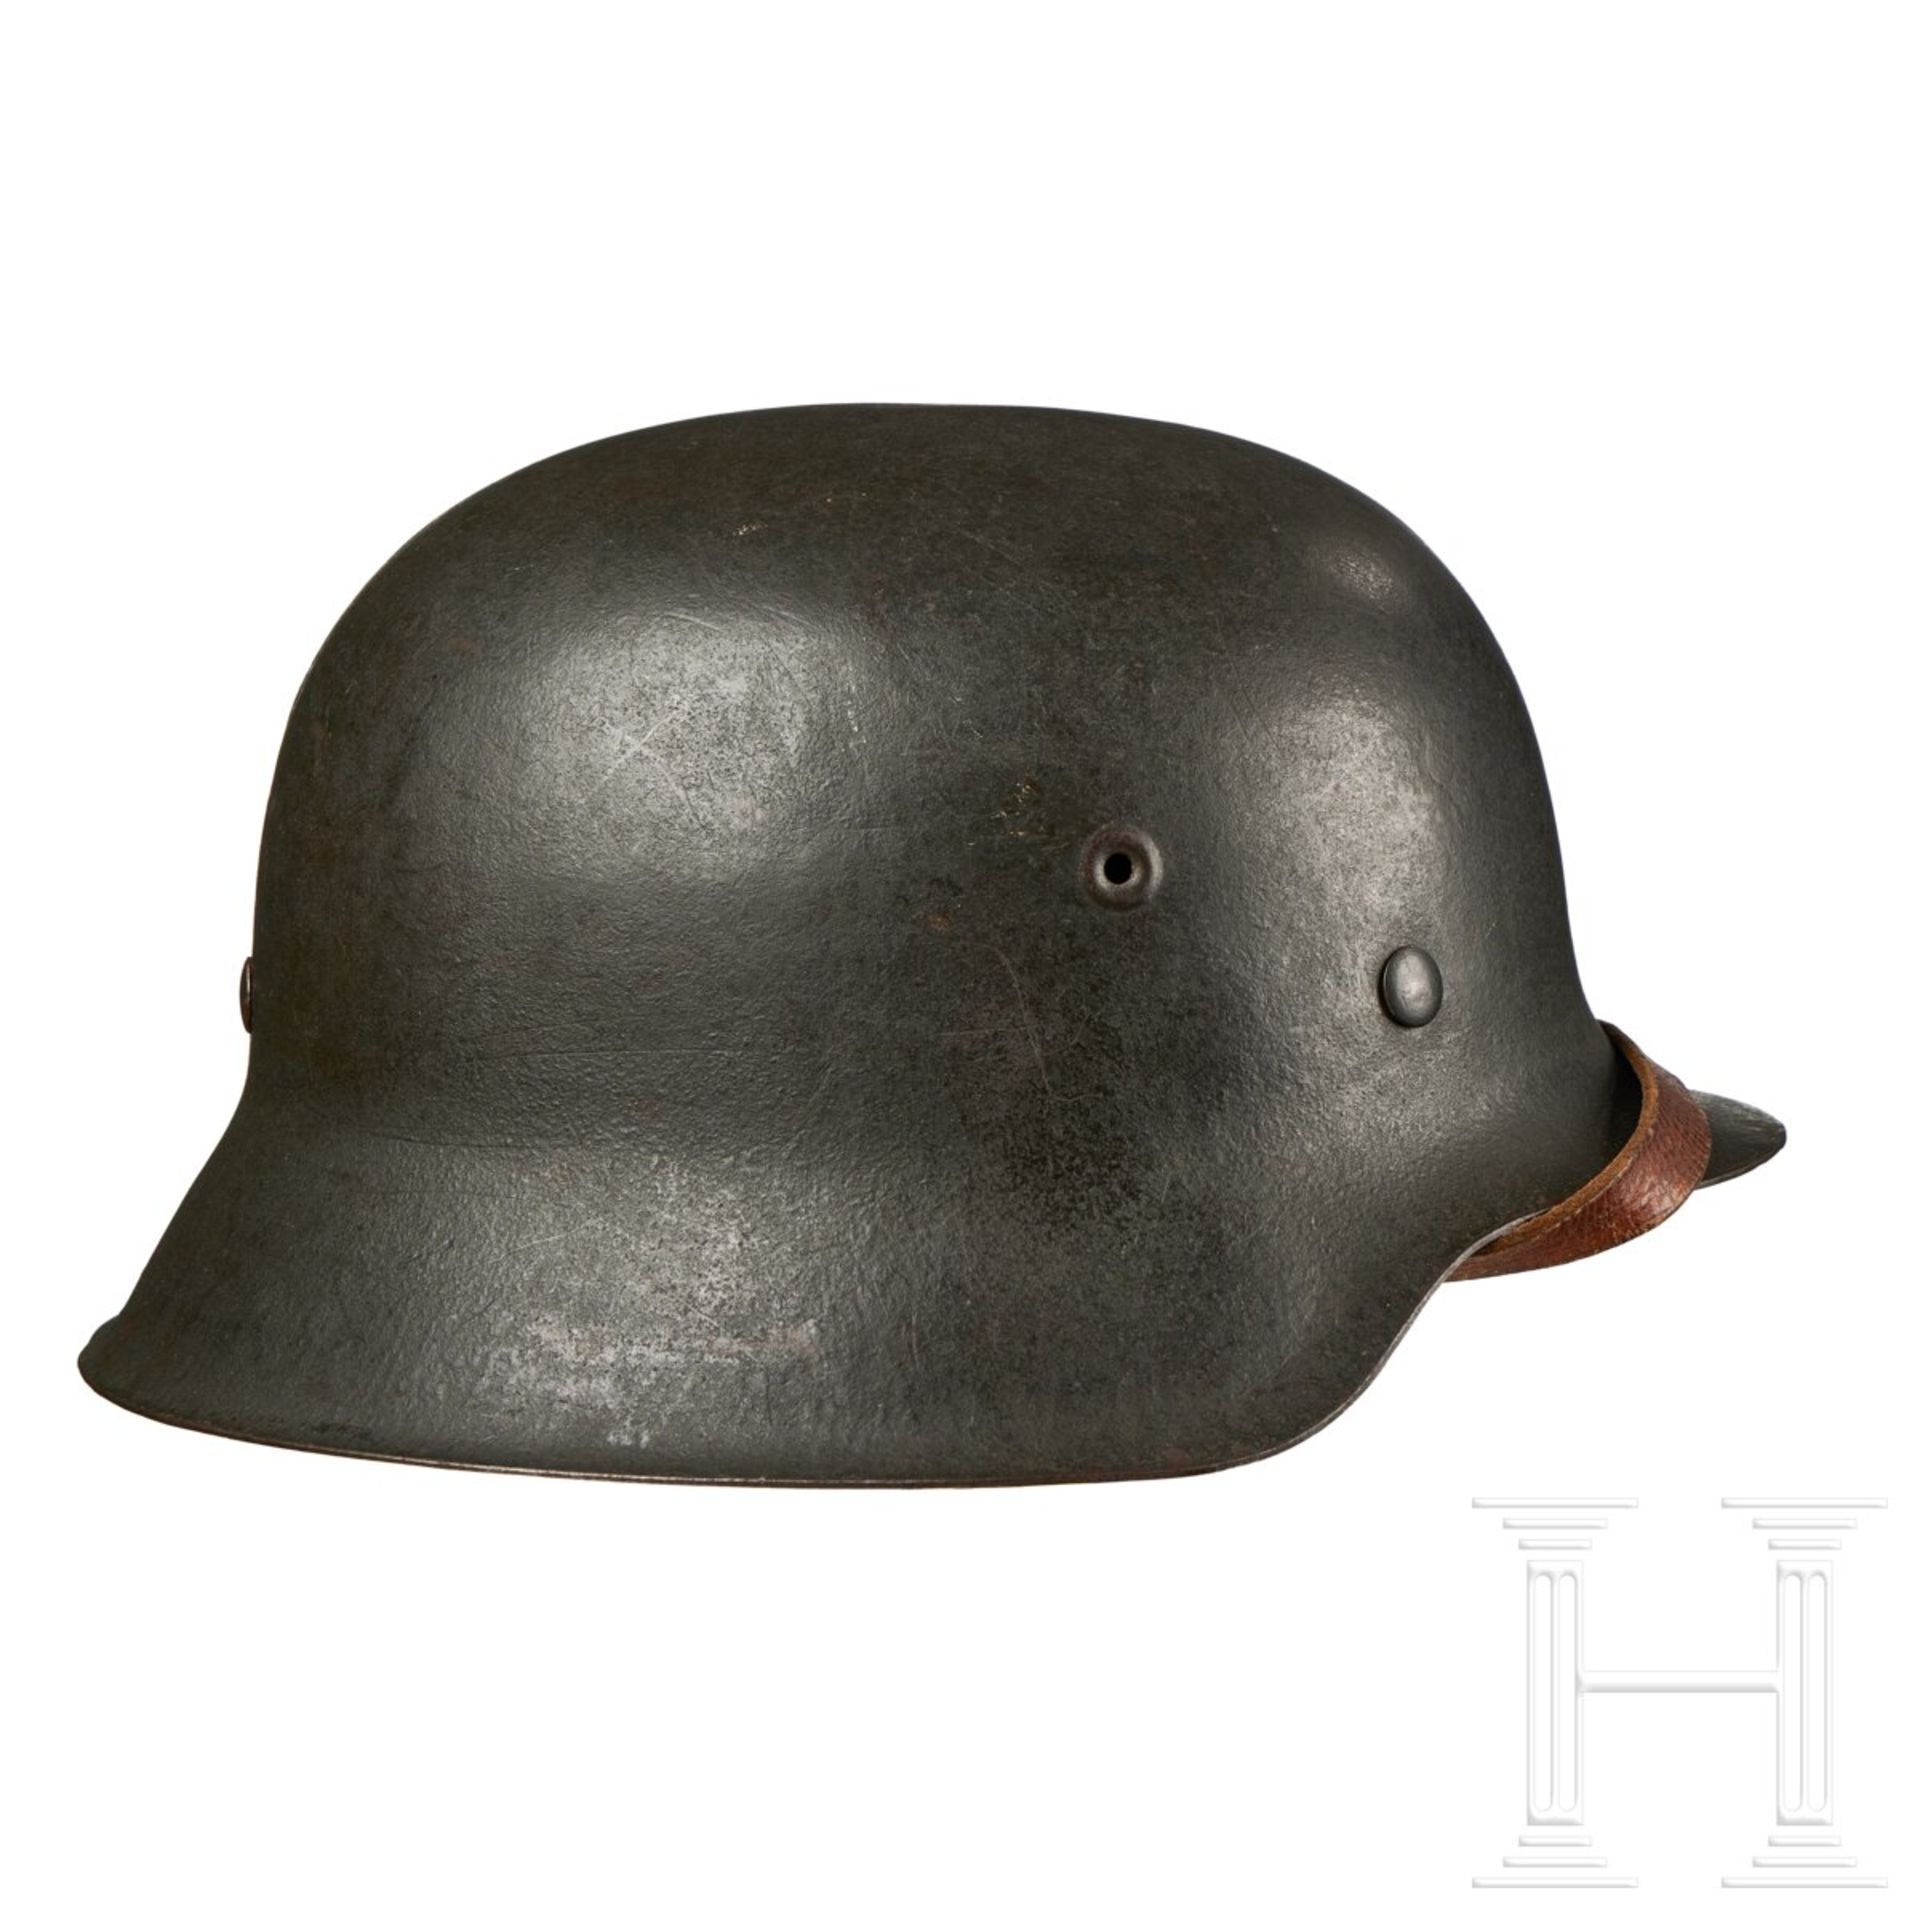 A Steel Helmet, Heer, no decal - Image 4 of 7